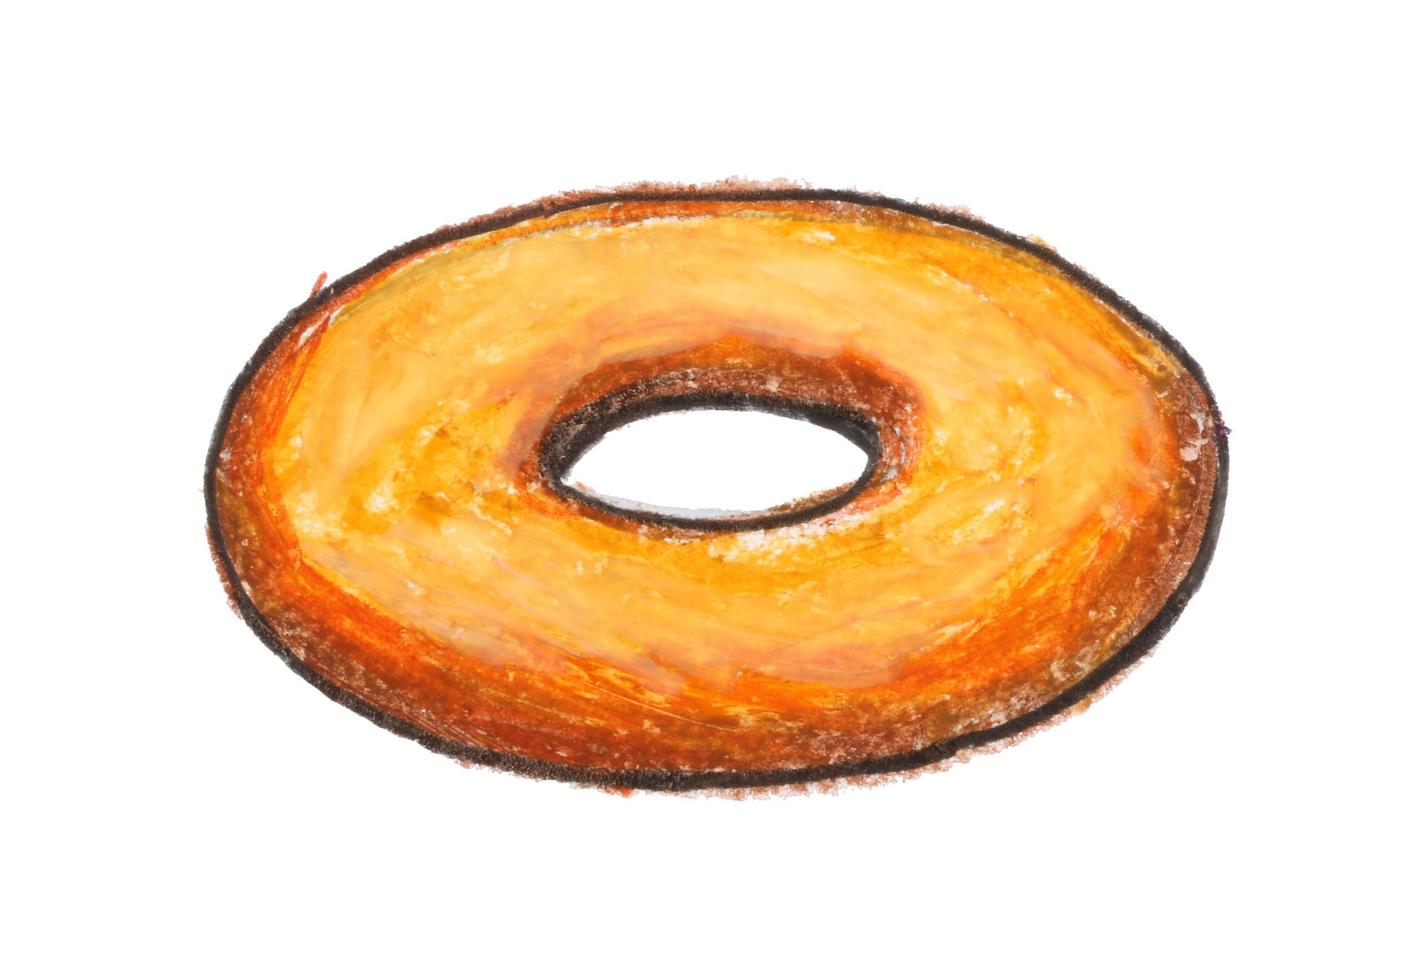 Donut dessin avec crayon sur papier blanc photo